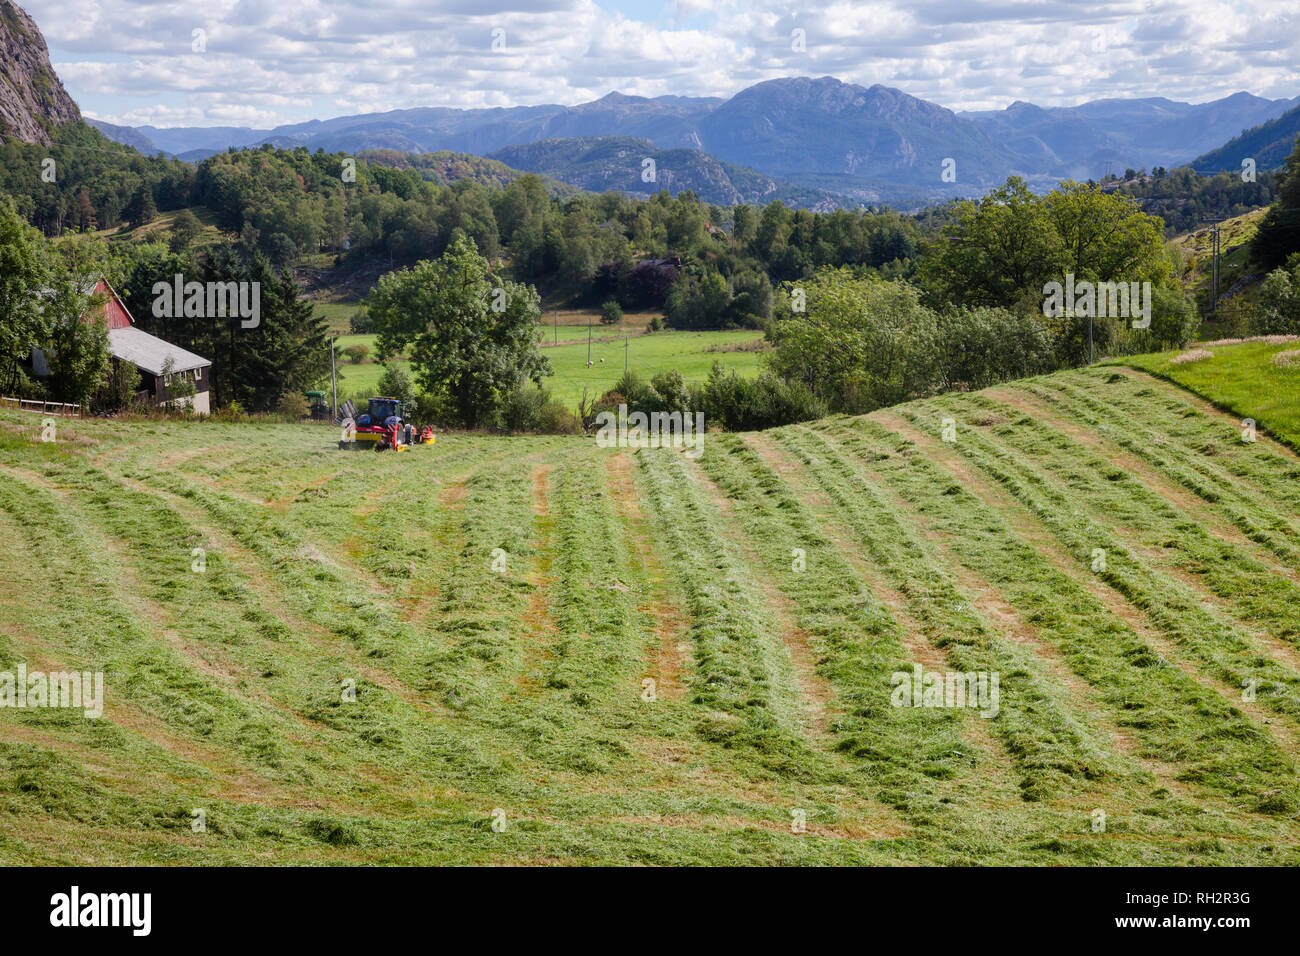 Paysage rural norvégien avec tracteur faisant les andains de foin fraîchement coupé à sec avant d'être mis en balles Norvège Scandinavie Banque D'Images